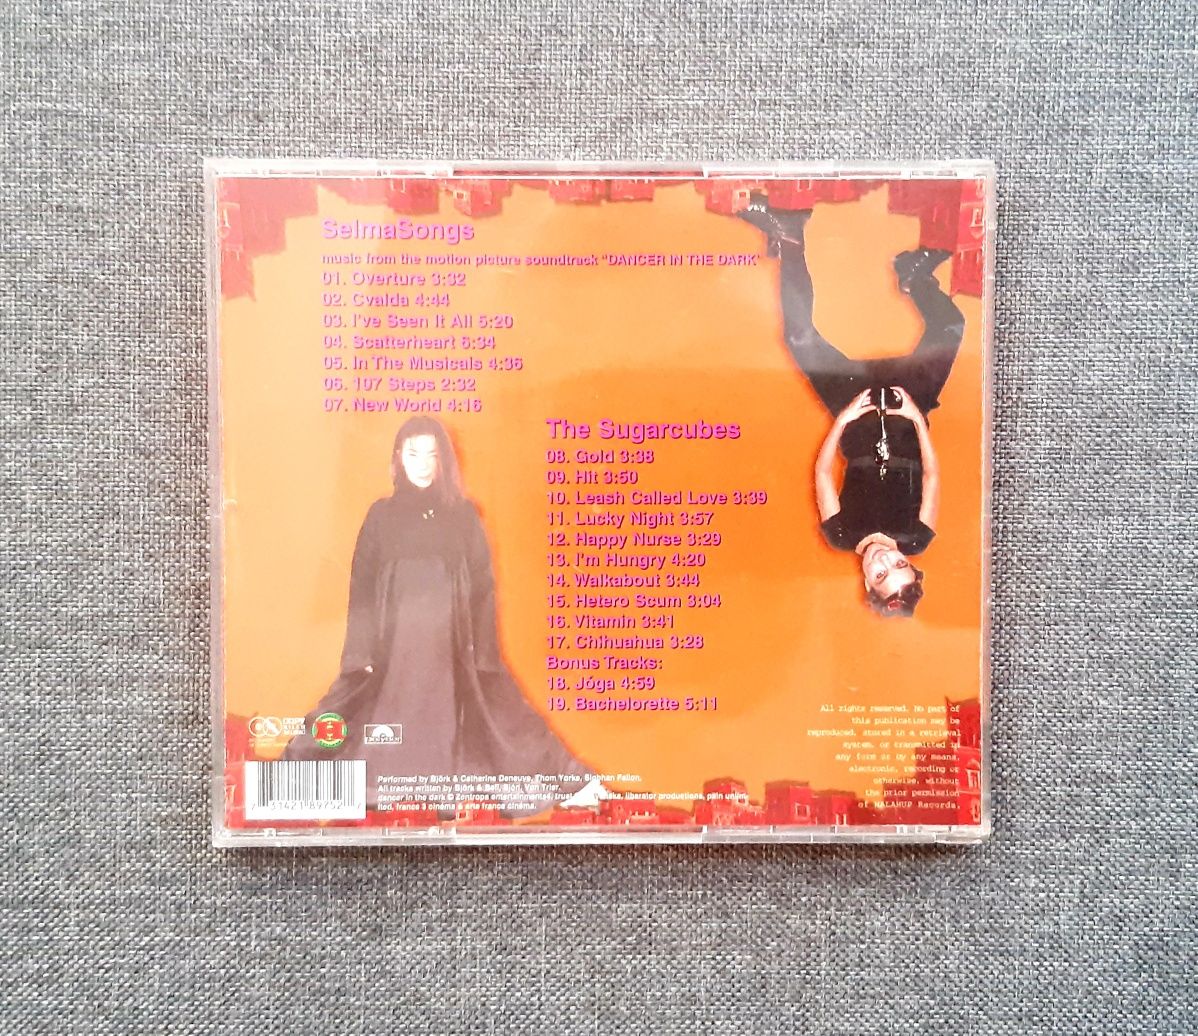 CD Płyta Bjork / EU